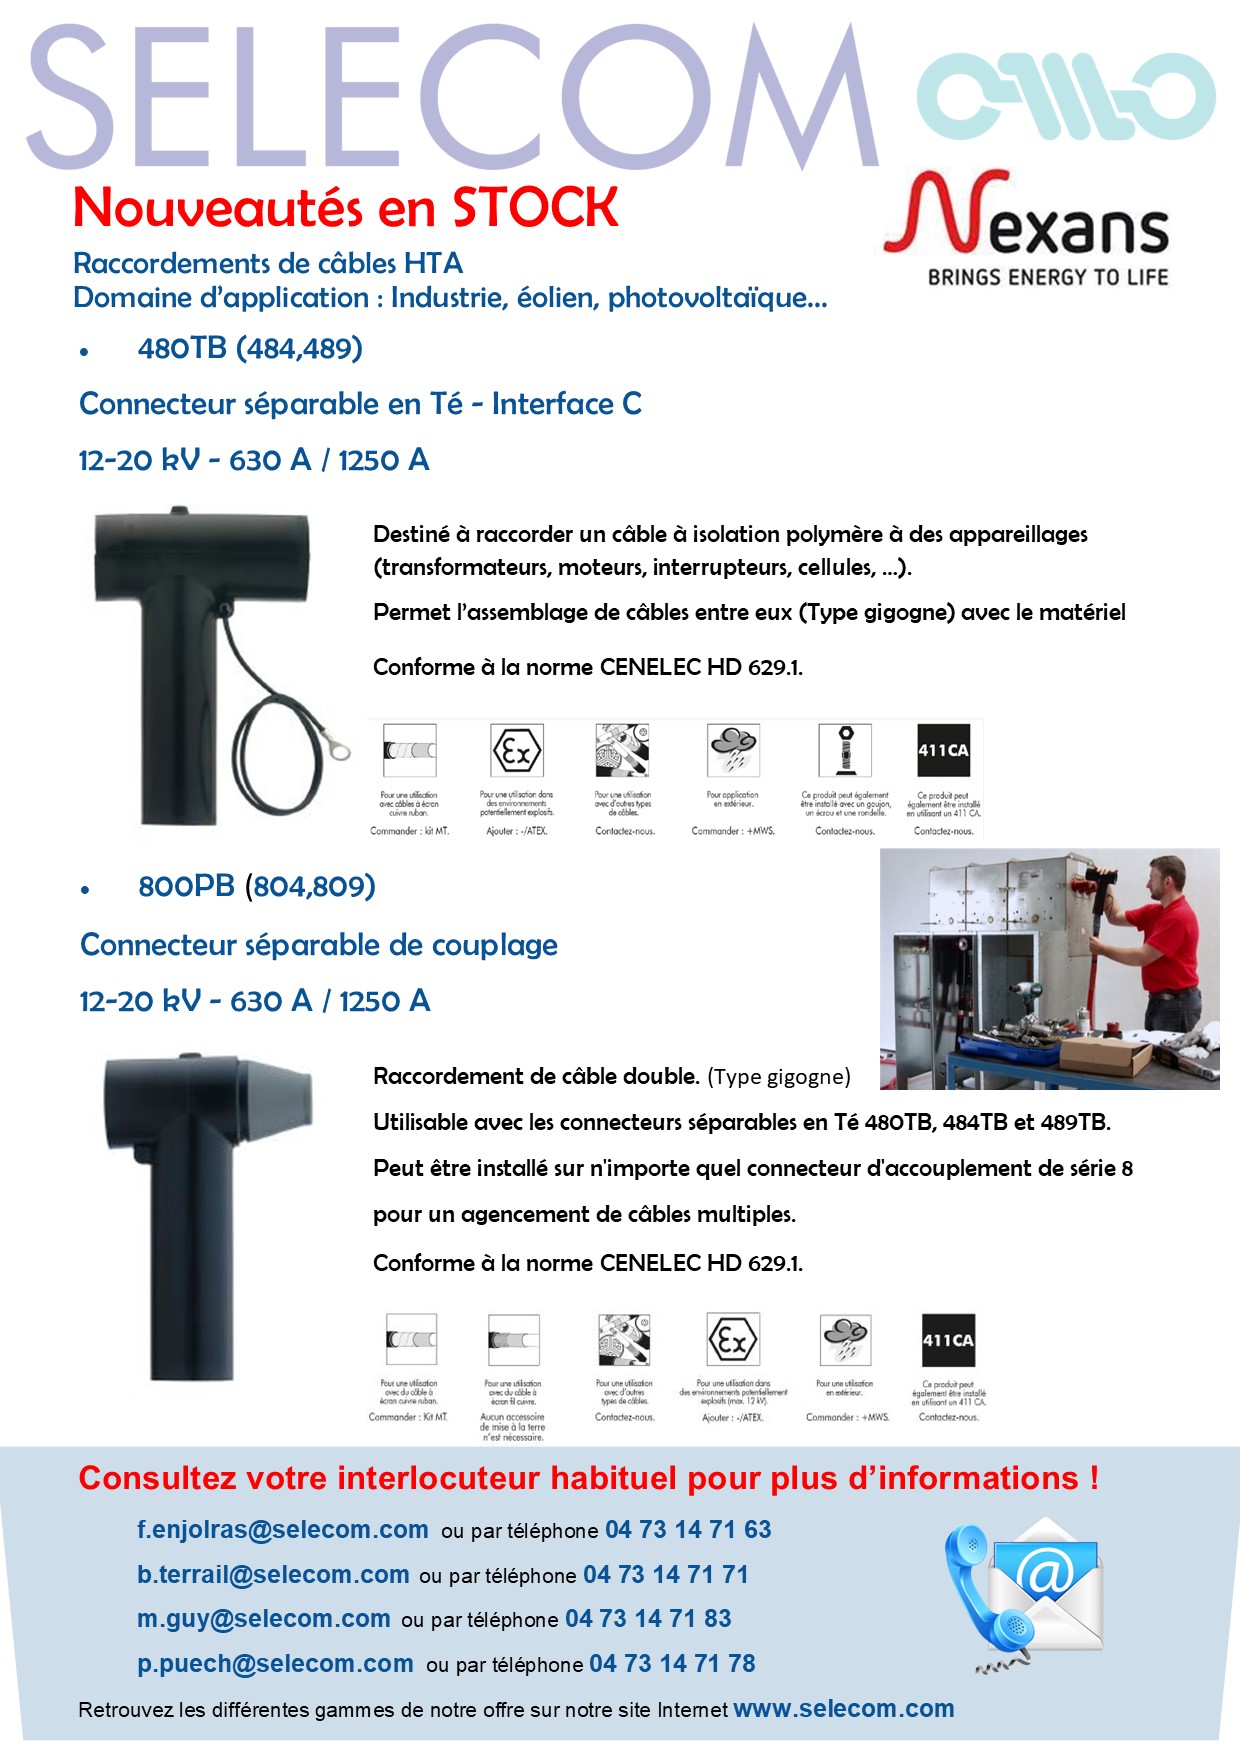 Connecteurs Nexans - Prises - Accessoires en stock chez SELECOM